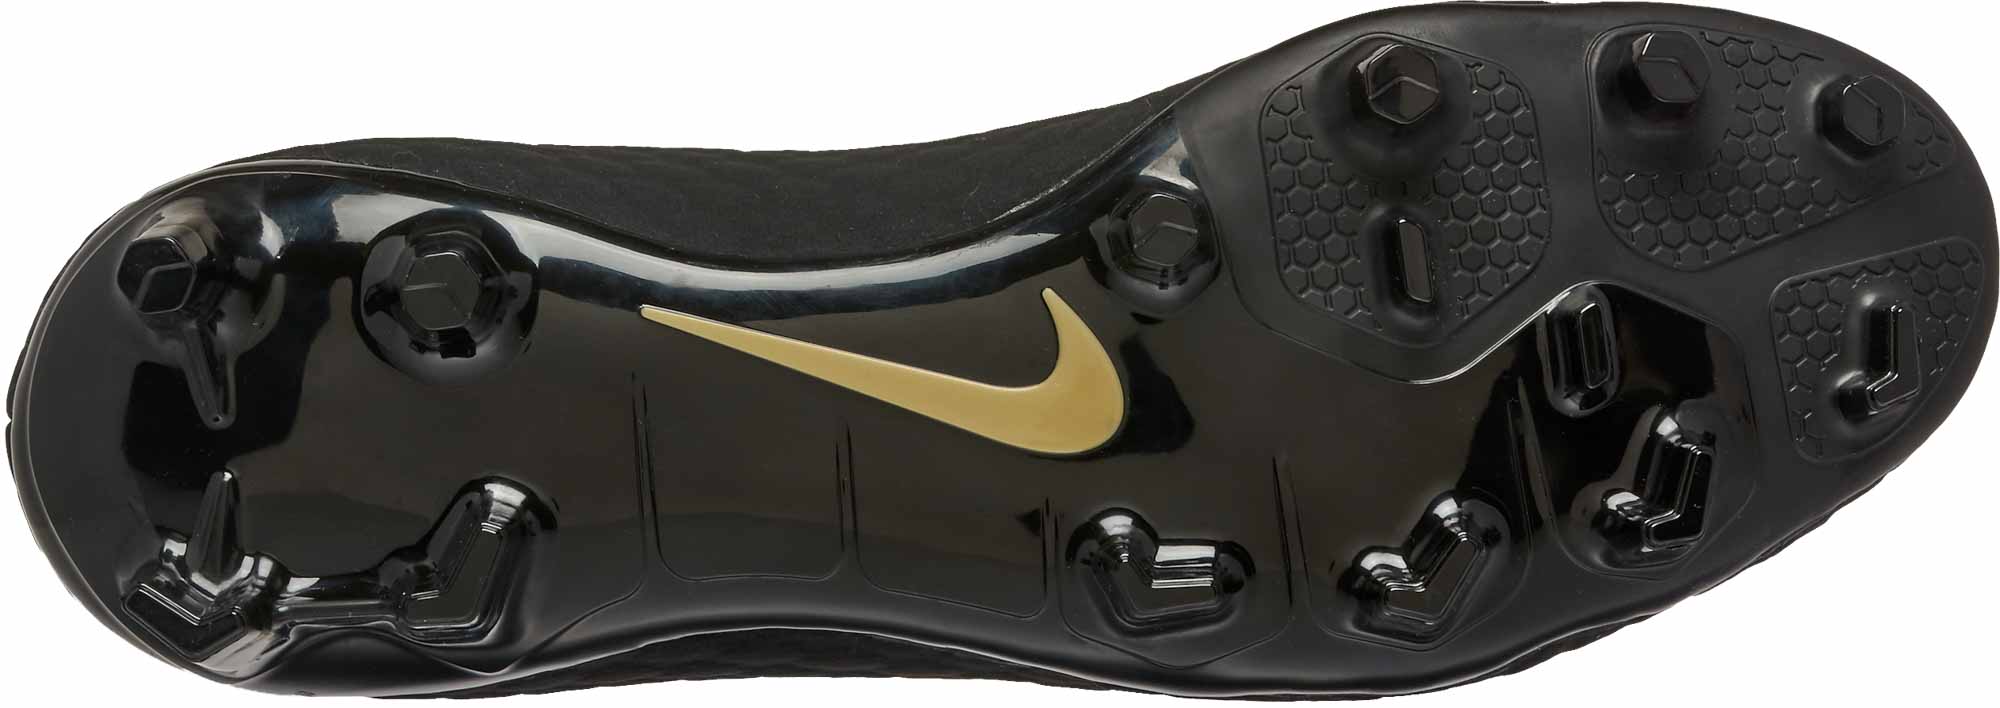 Nike Hypervenom Phantom III FG Nouveautés Crampons